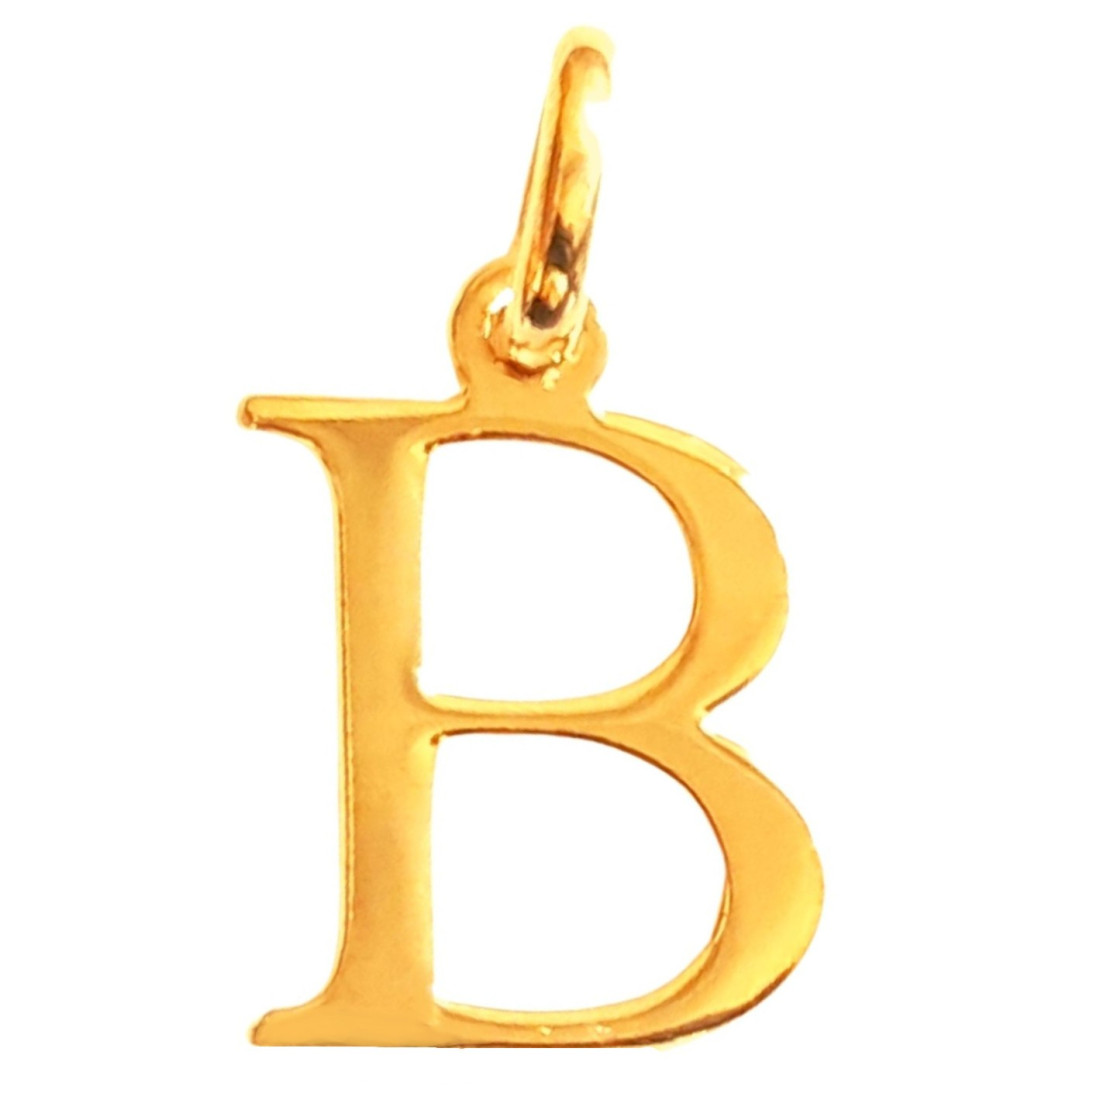 Pendentif Initiale simple lettre B en plaqué or + chaine